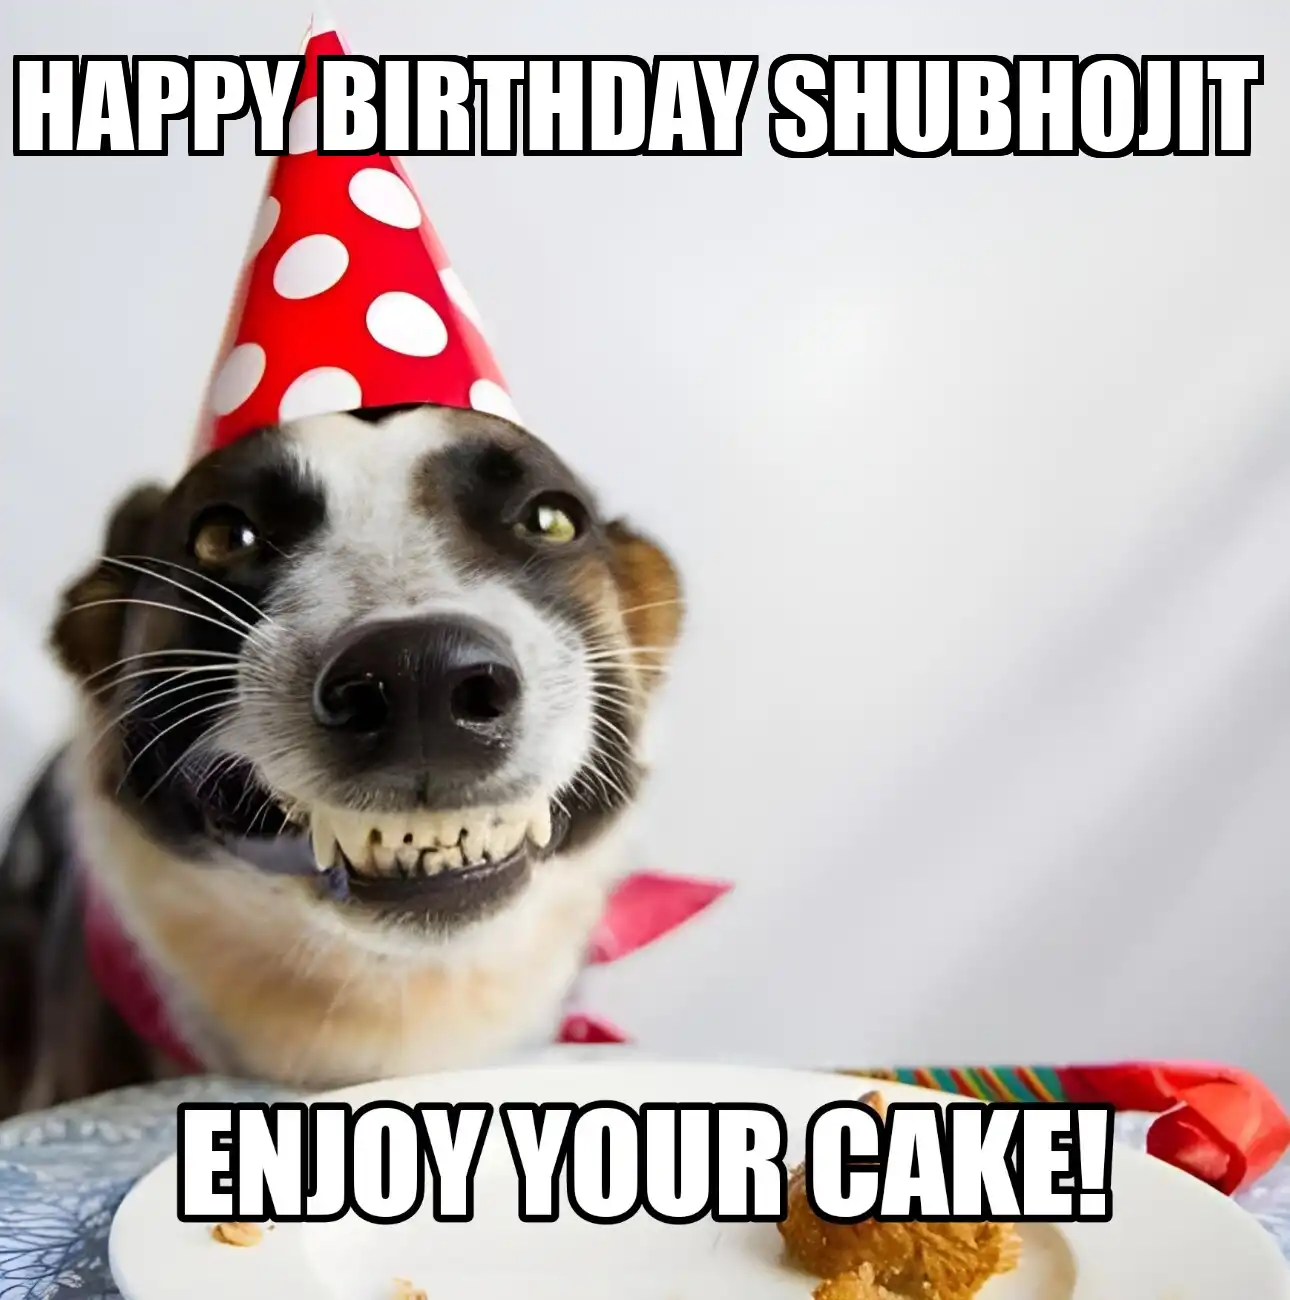 Happy Birthday Shubhojit Enjoy Your Cake Dog Meme